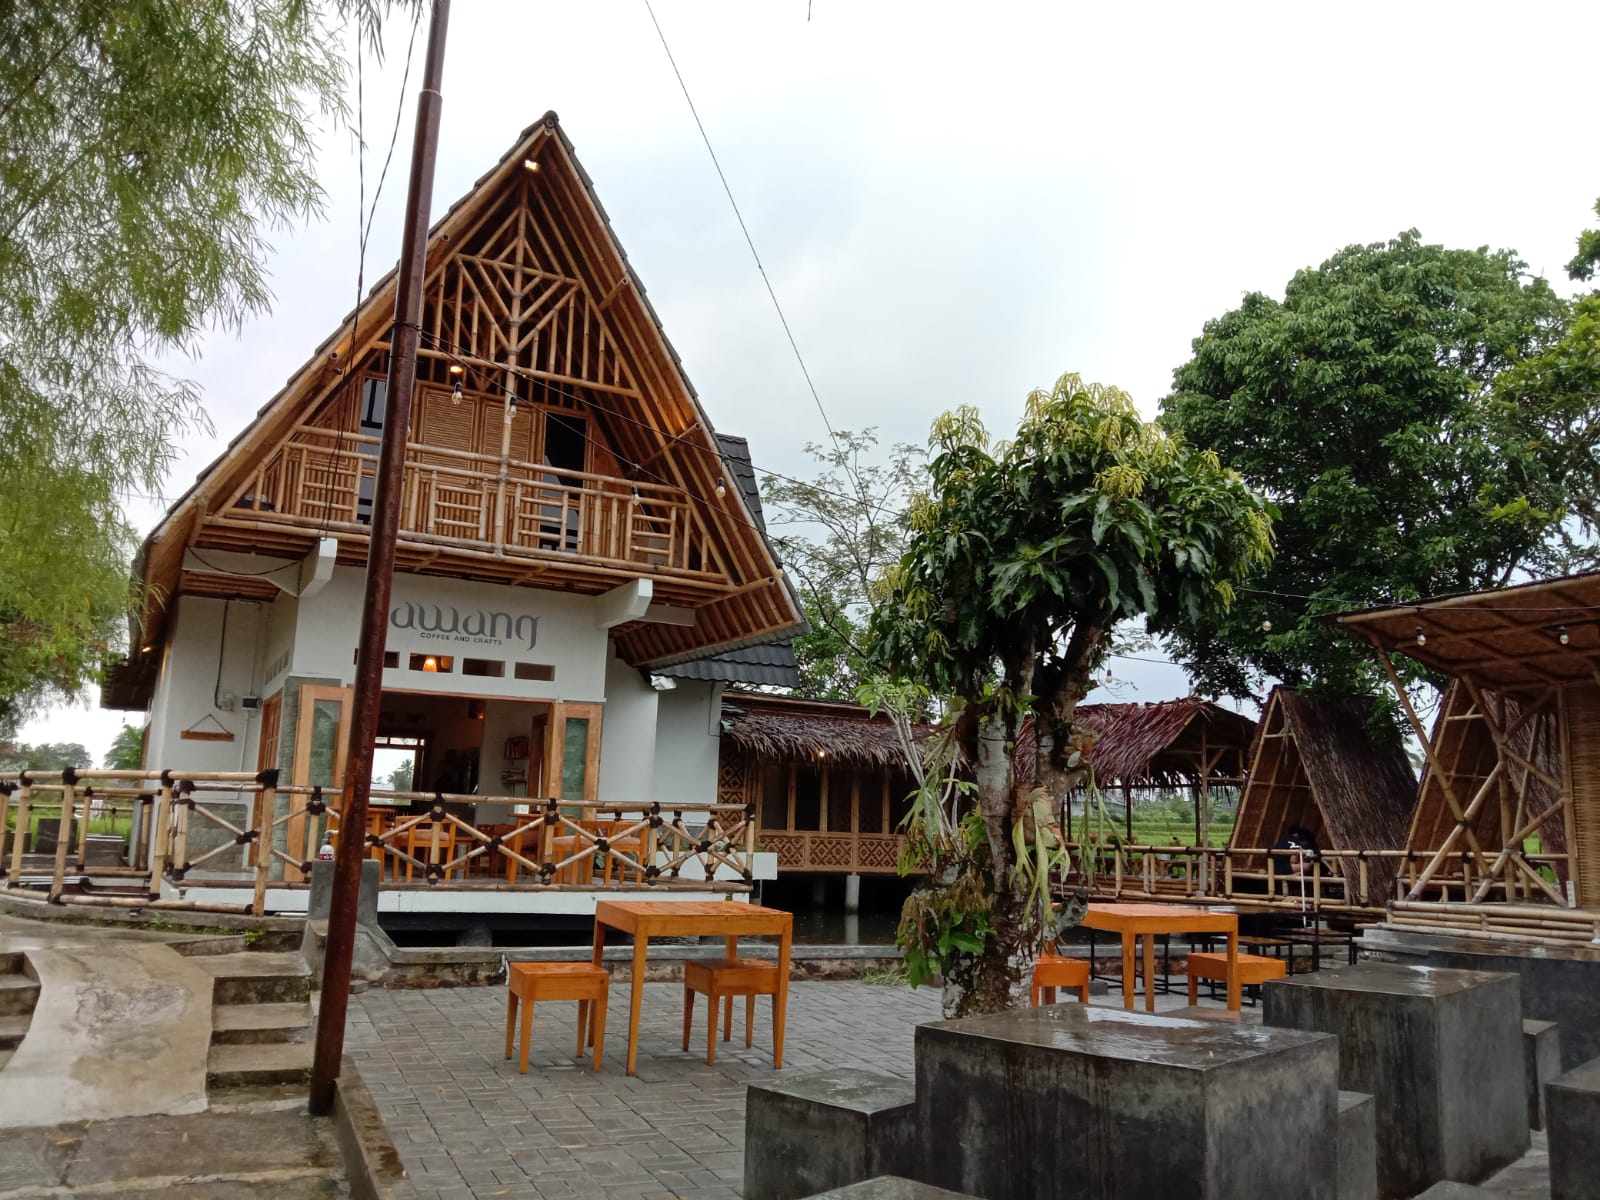 Tempat Rileks Berkonsep Natural Klasik di Lawang Coffee And Craft Tasikmalaya